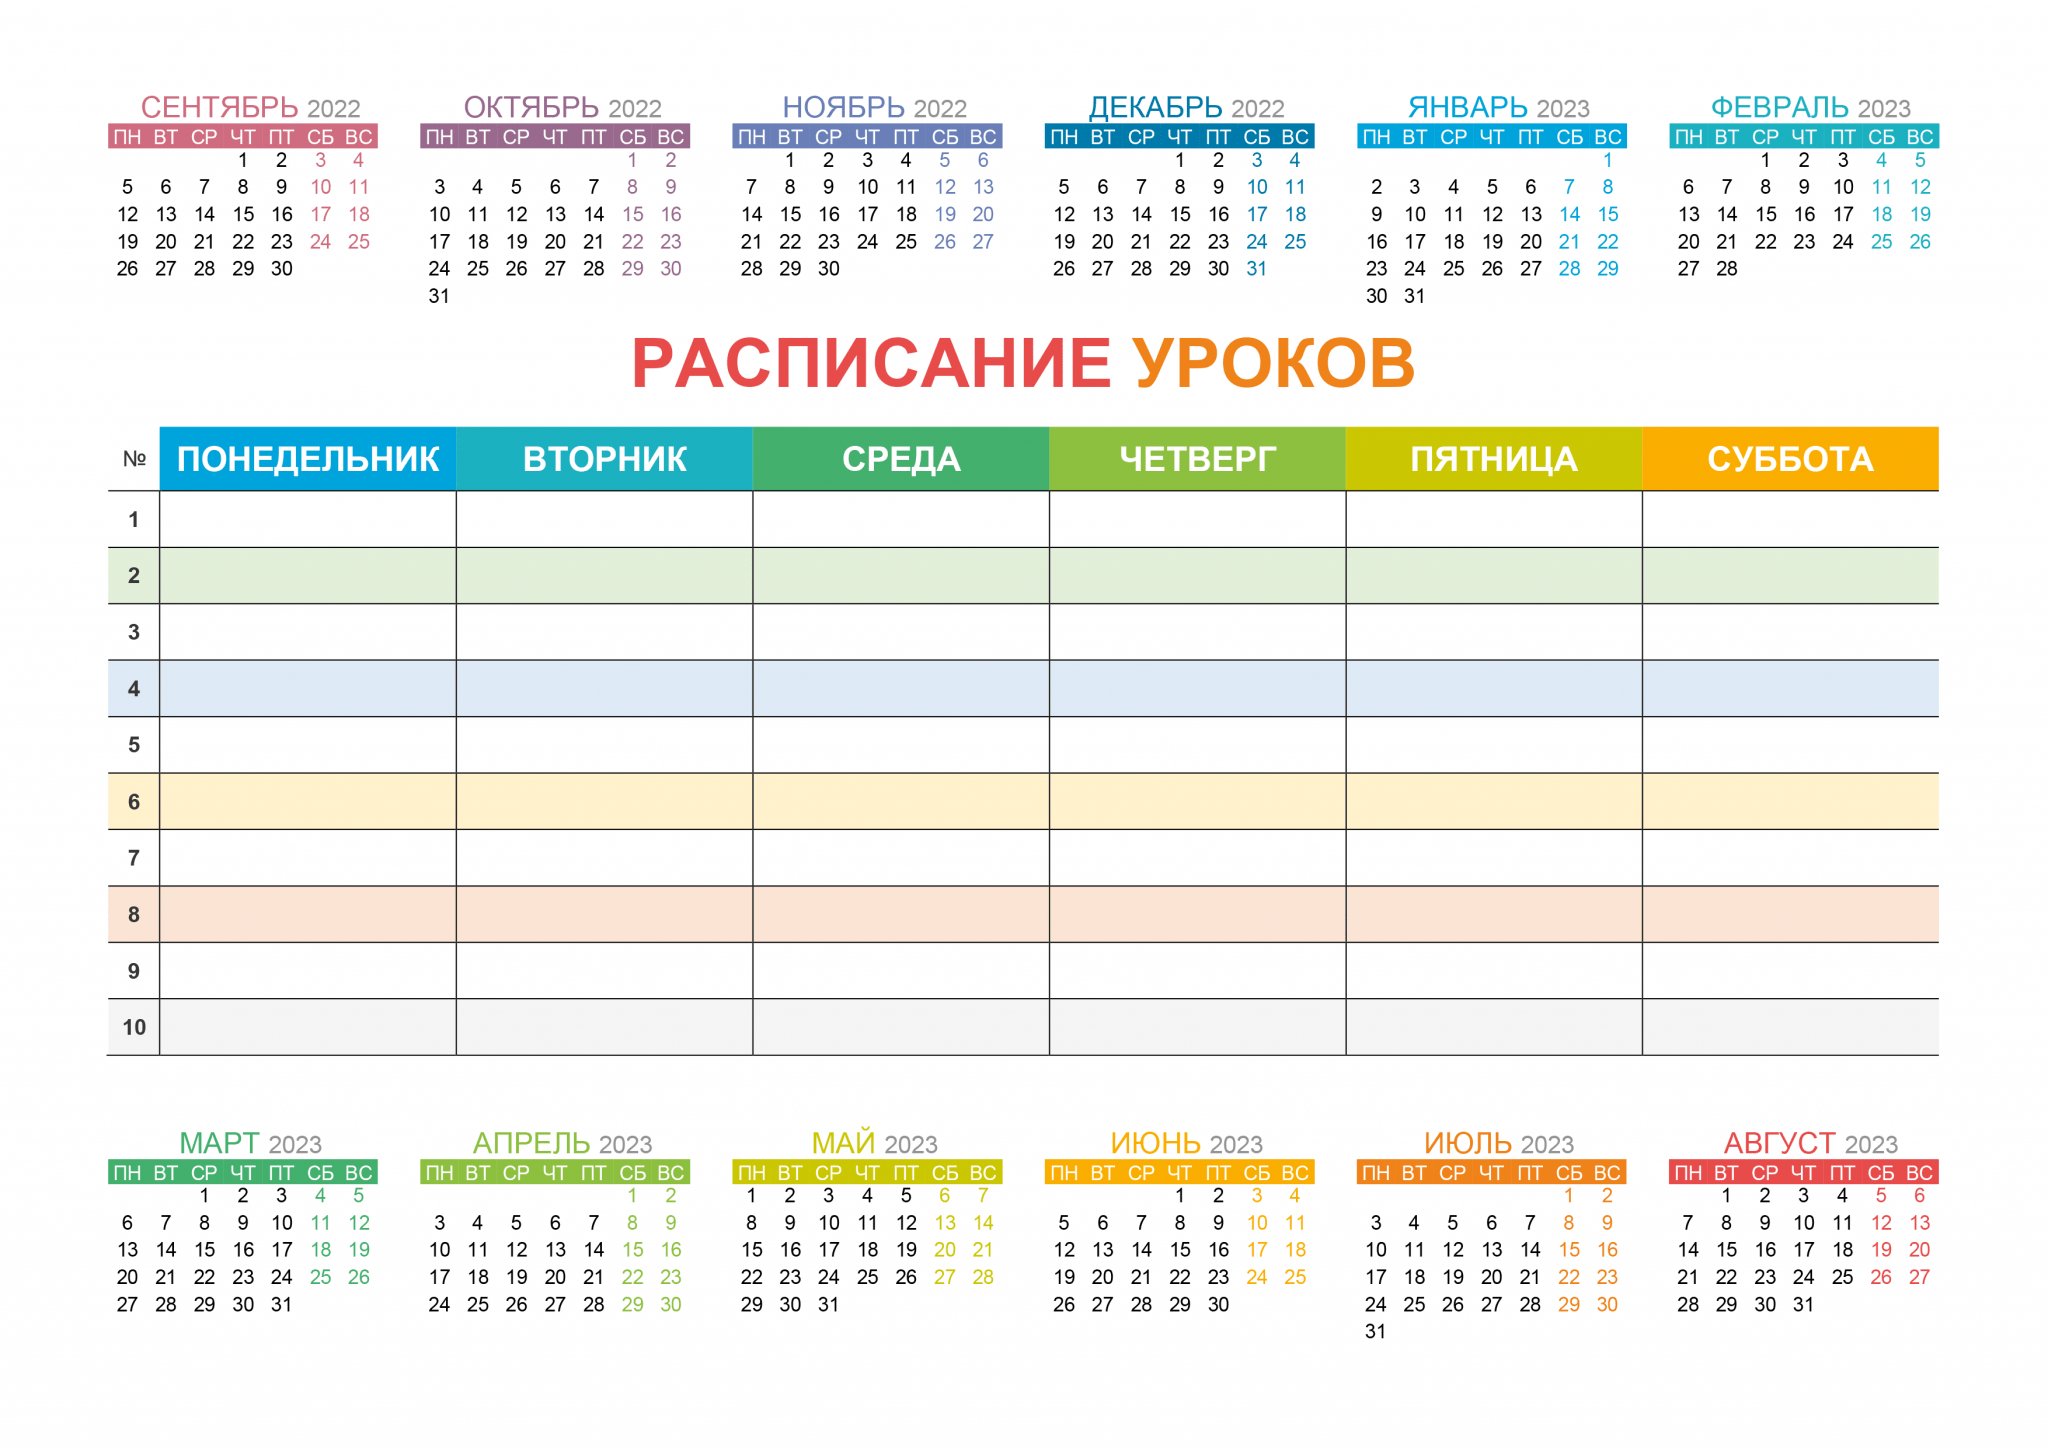 Образец календаря на 2023 год